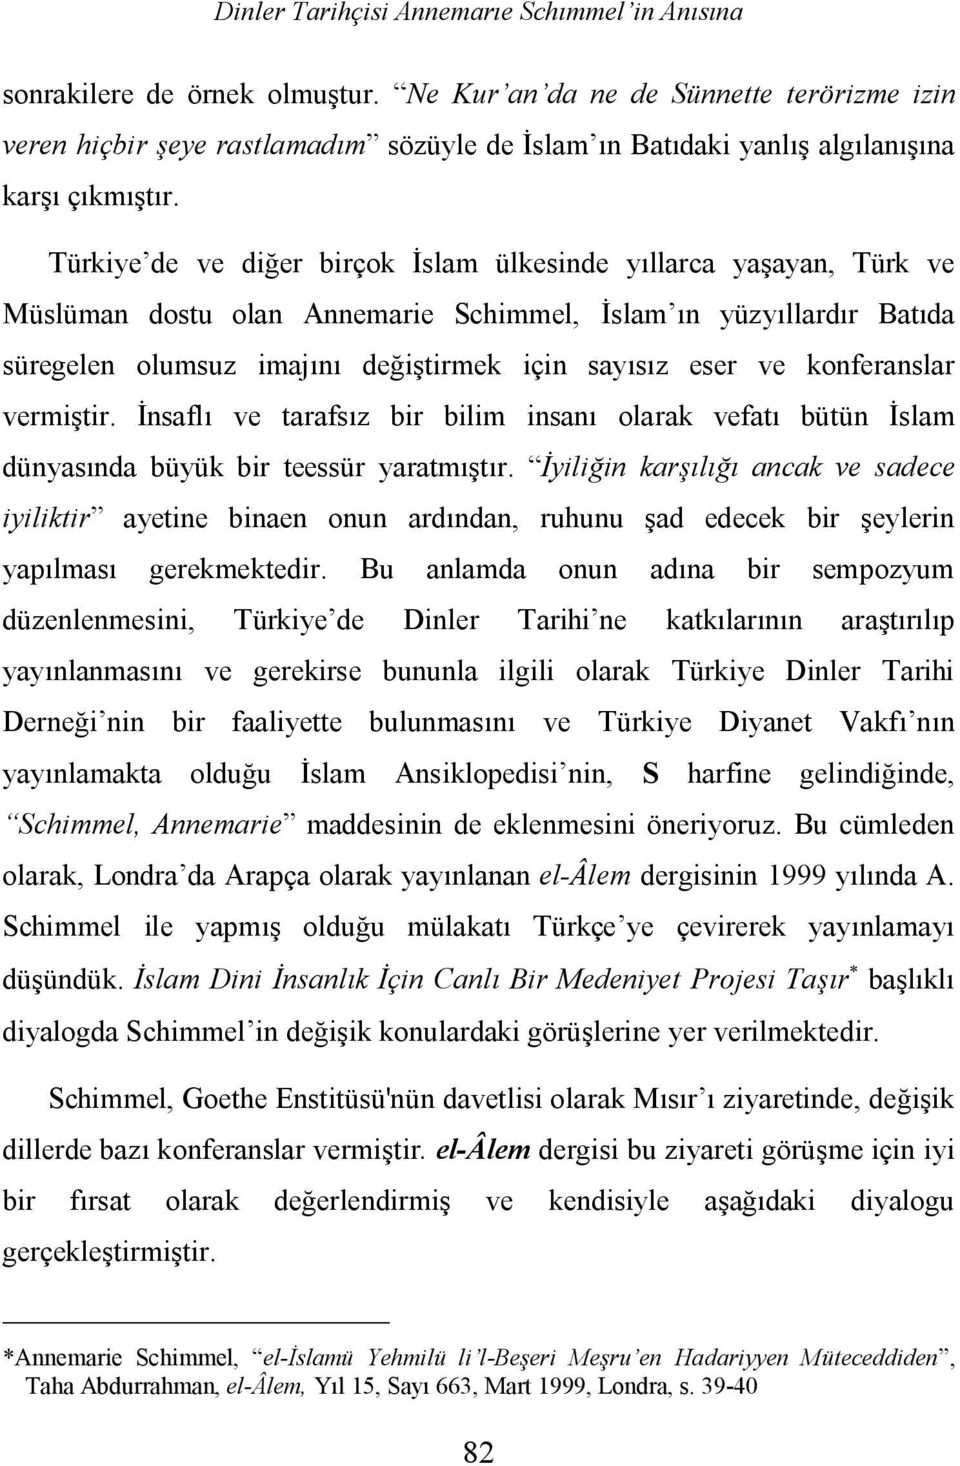 Türkiye de ve diğer birçok İslam ülkesinde yıllarca yaşayan, Türk ve Müslüman dostu olan Annemarie Schimmel, İslam ın yüzyıllardır Batıda süregelen olumsuz imajını değiştirmek için sayısız eser ve